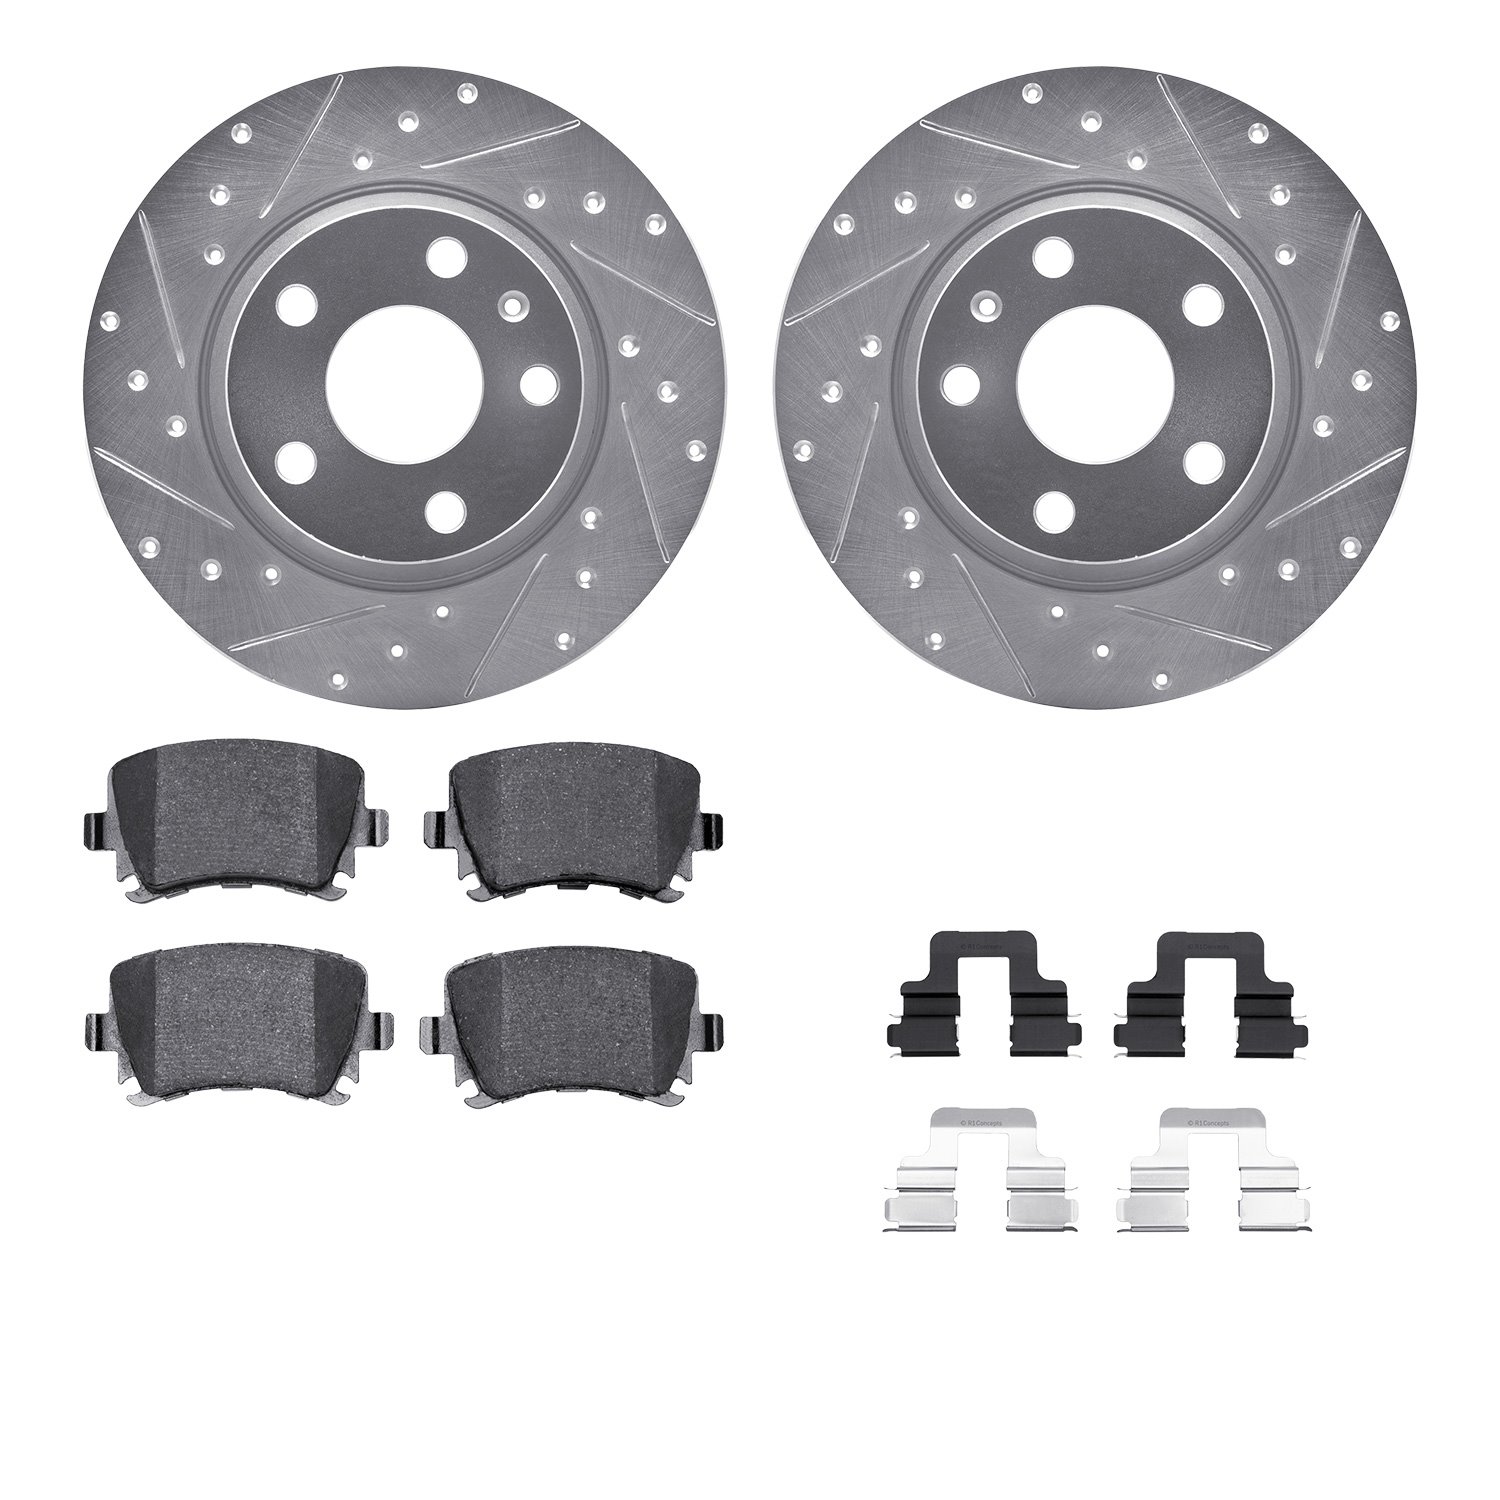 7612-73046 Drilled/Slotted Brake Rotors w/5000 Euro Ceramic Brake Pads Kit & Hardware [Silver], 2008-2015 Audi/Volkswagen, Posit